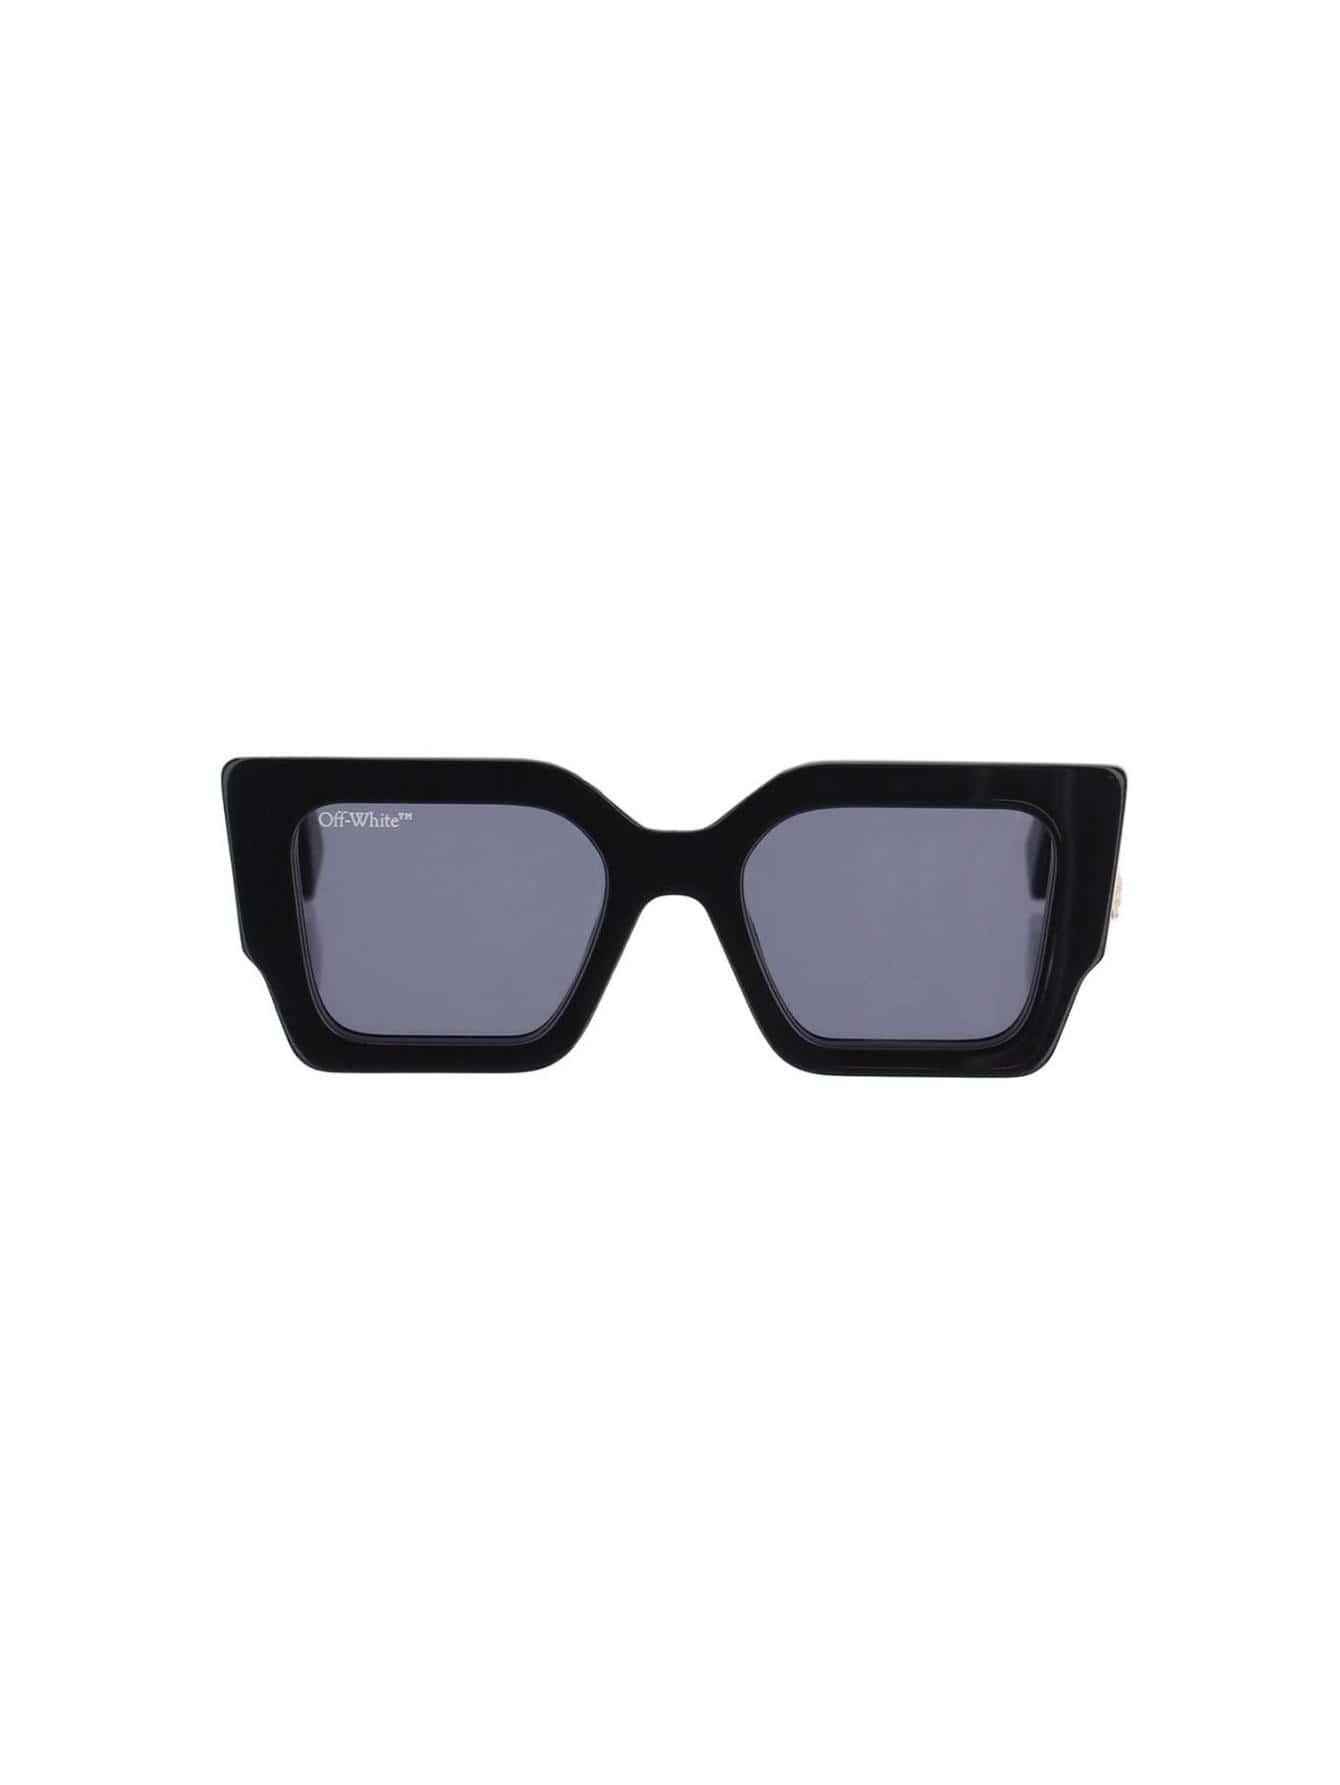 мужские солнцезащитные очки off white черные oeri094f23pla0011007 черный Женские солнцезащитные очки Off-White ЧЕРНЫЕ OERI003C99PLA0011007, черный